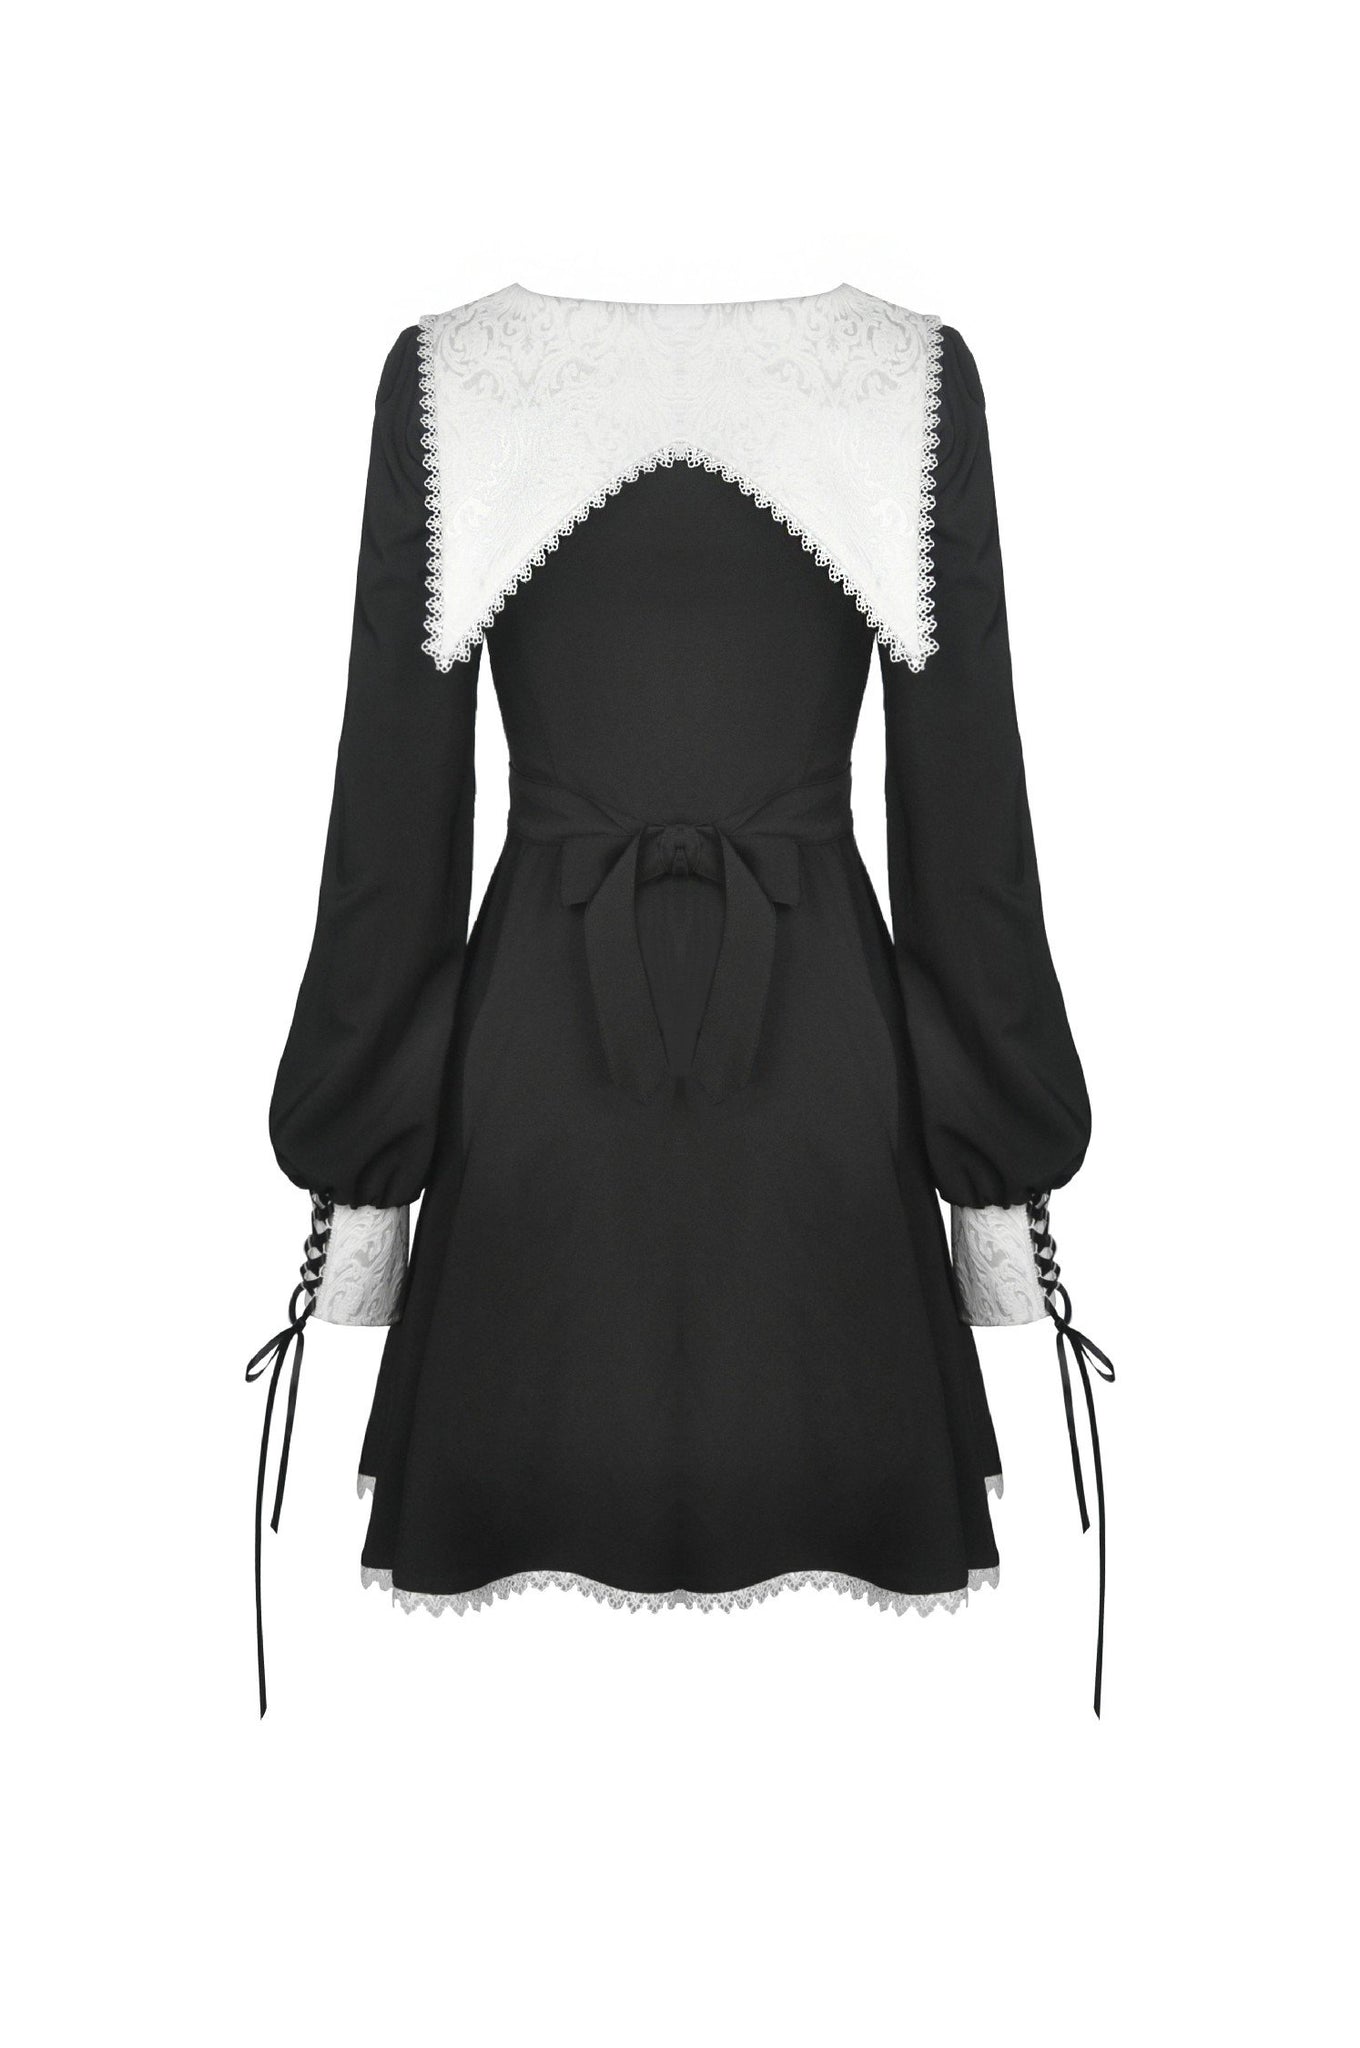 Gothic ghost white collar dress DW450 – DARK IN LOVE